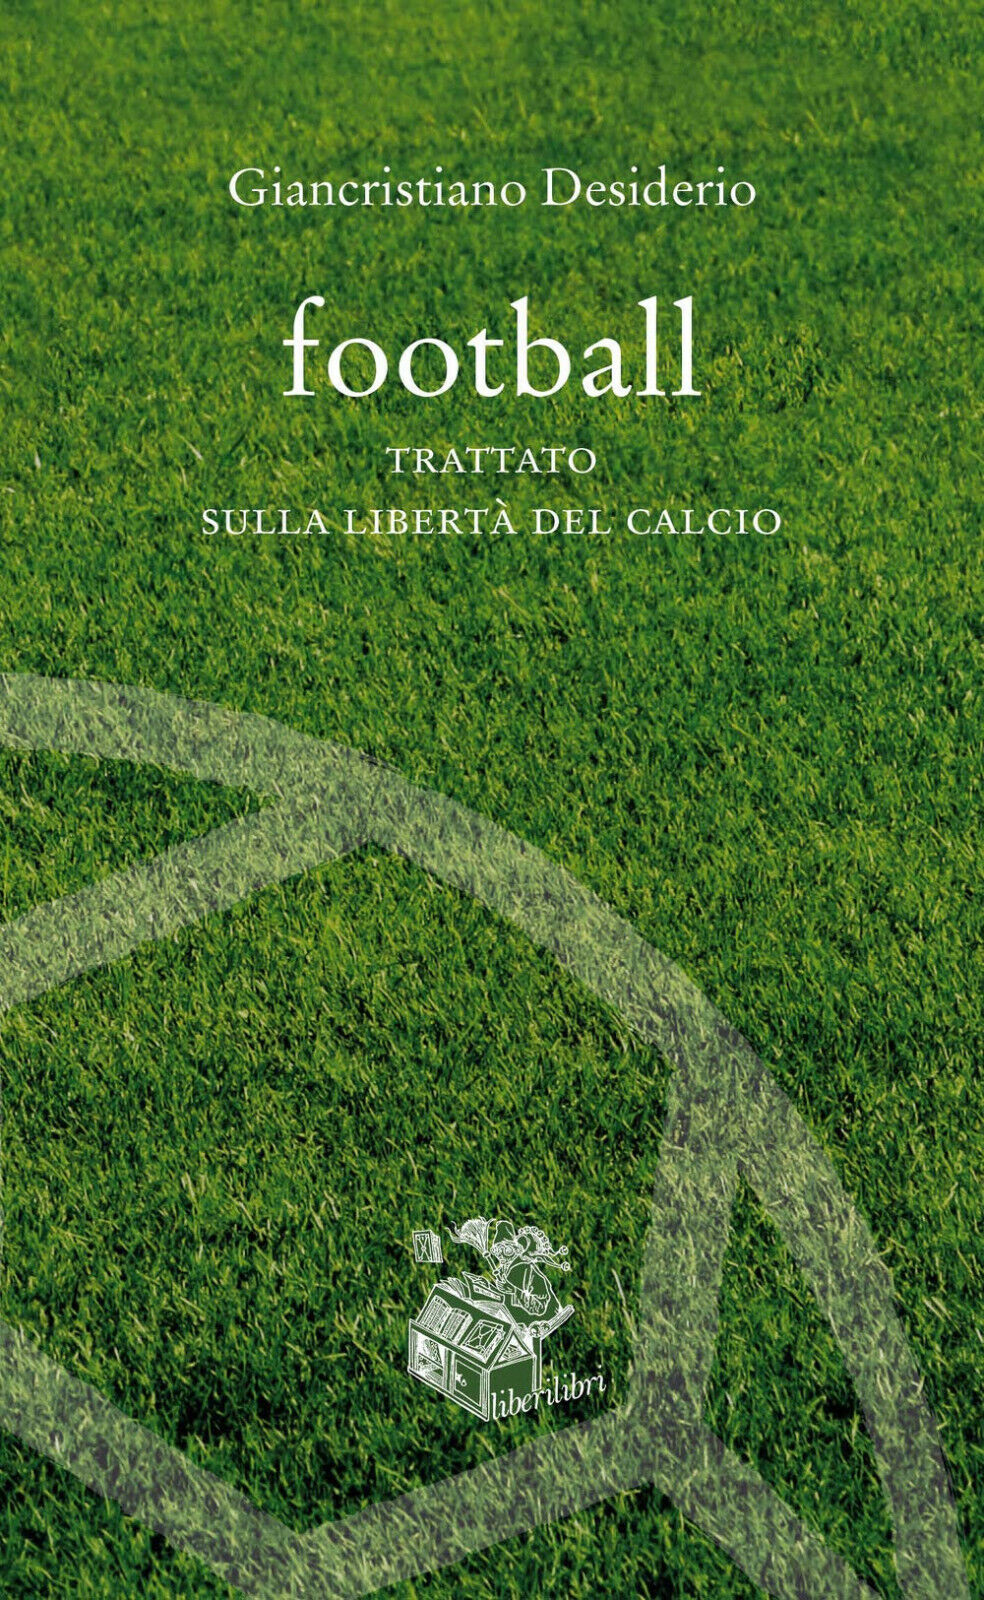 Football. Trattato sulla libert? del calcio - Giancristiano Desiderio - 2020